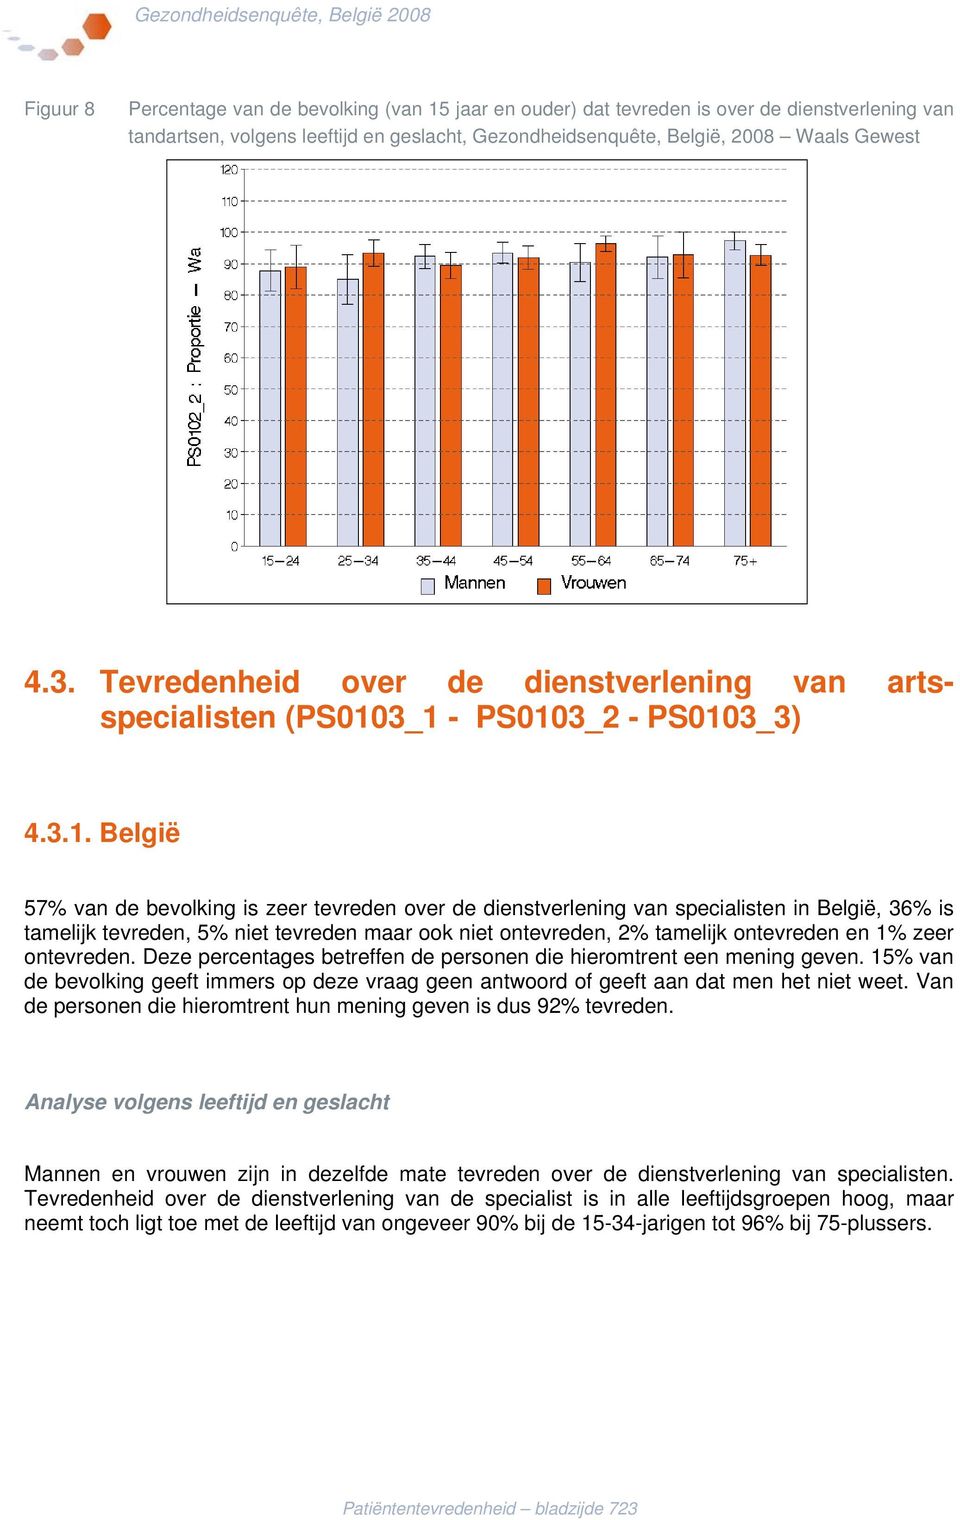 3_1 - PS0103_2 - PS0103_3) 4.3.1. België 57 van de bevolking is zeer over de dienstverlening van specialisten in België, 36 is tamelijk, 5 niet maar ook niet, 2 tamelijk en 1 zeer.